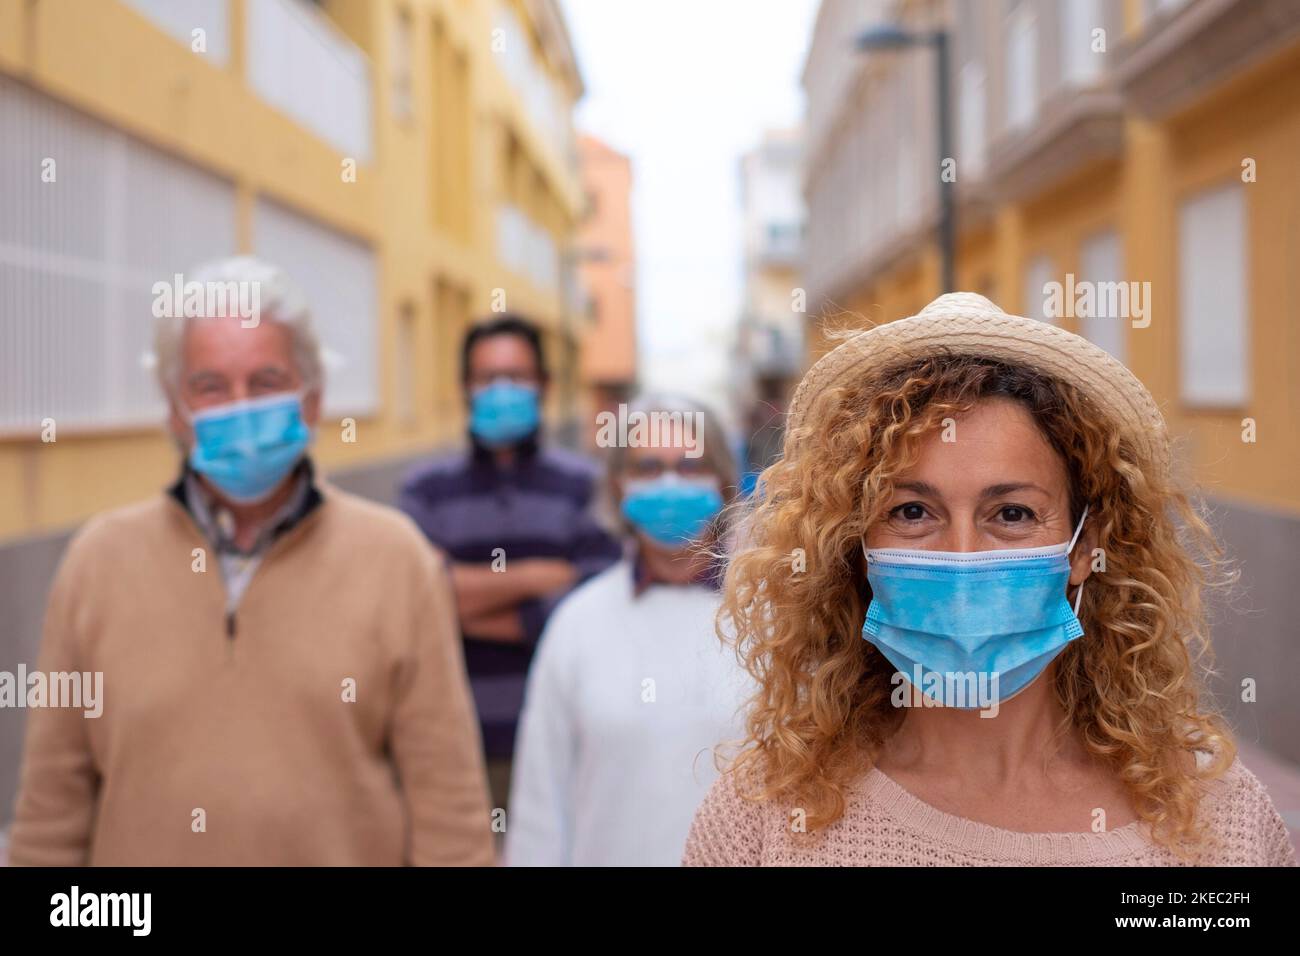 gruppo di quattro persone che indossano maschera mediale e chirurgica e respirano la distanza sociale insieme per strada - adulti sorridenti e che guardano la macchina fotografica in stile di vita pandemico Foto Stock